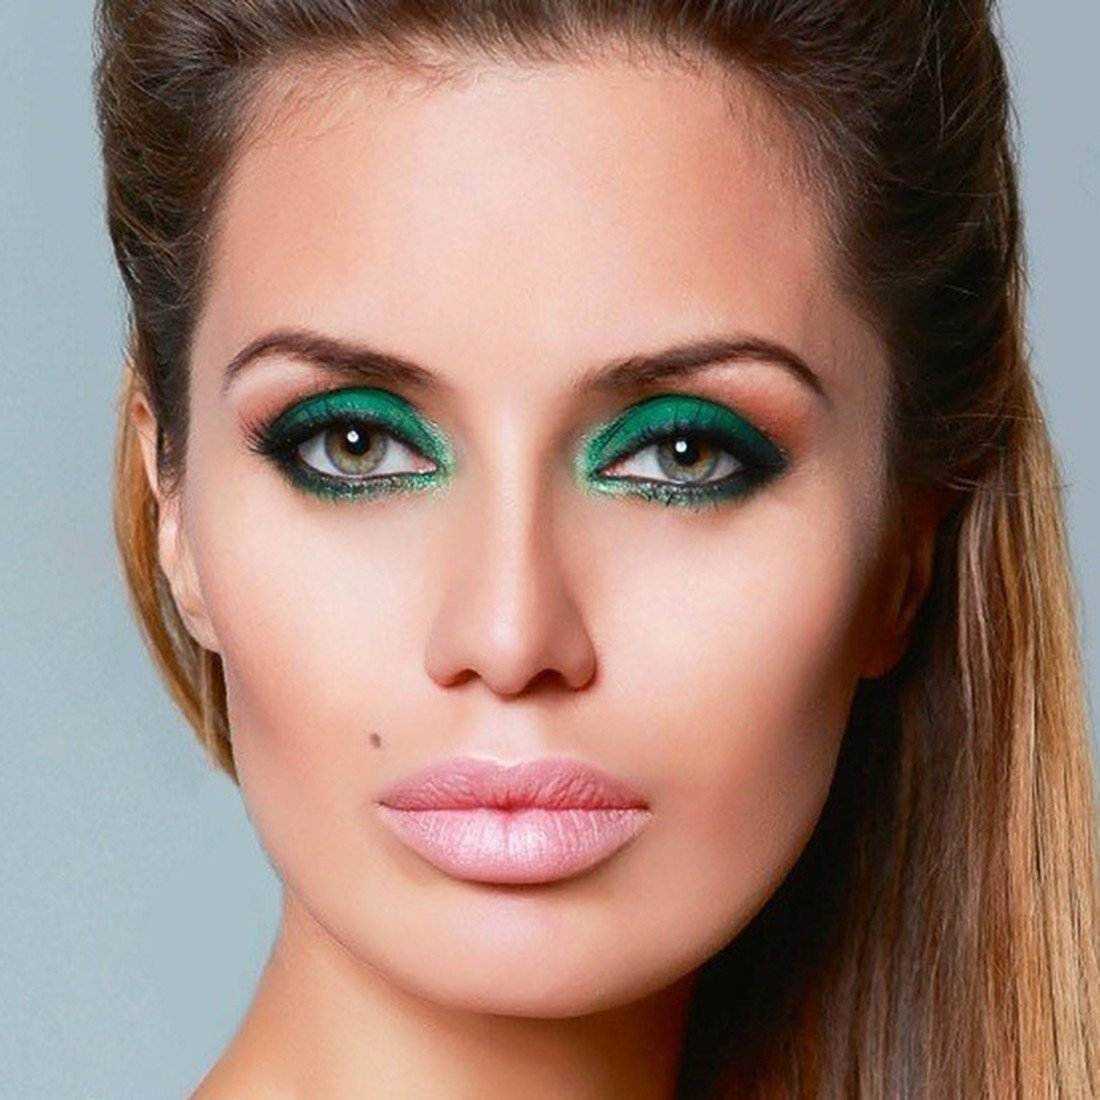 Макияж для зеленых глаз: тушь, тени, стрелки, фото - автор екатерина данилова - журнал женское мнение